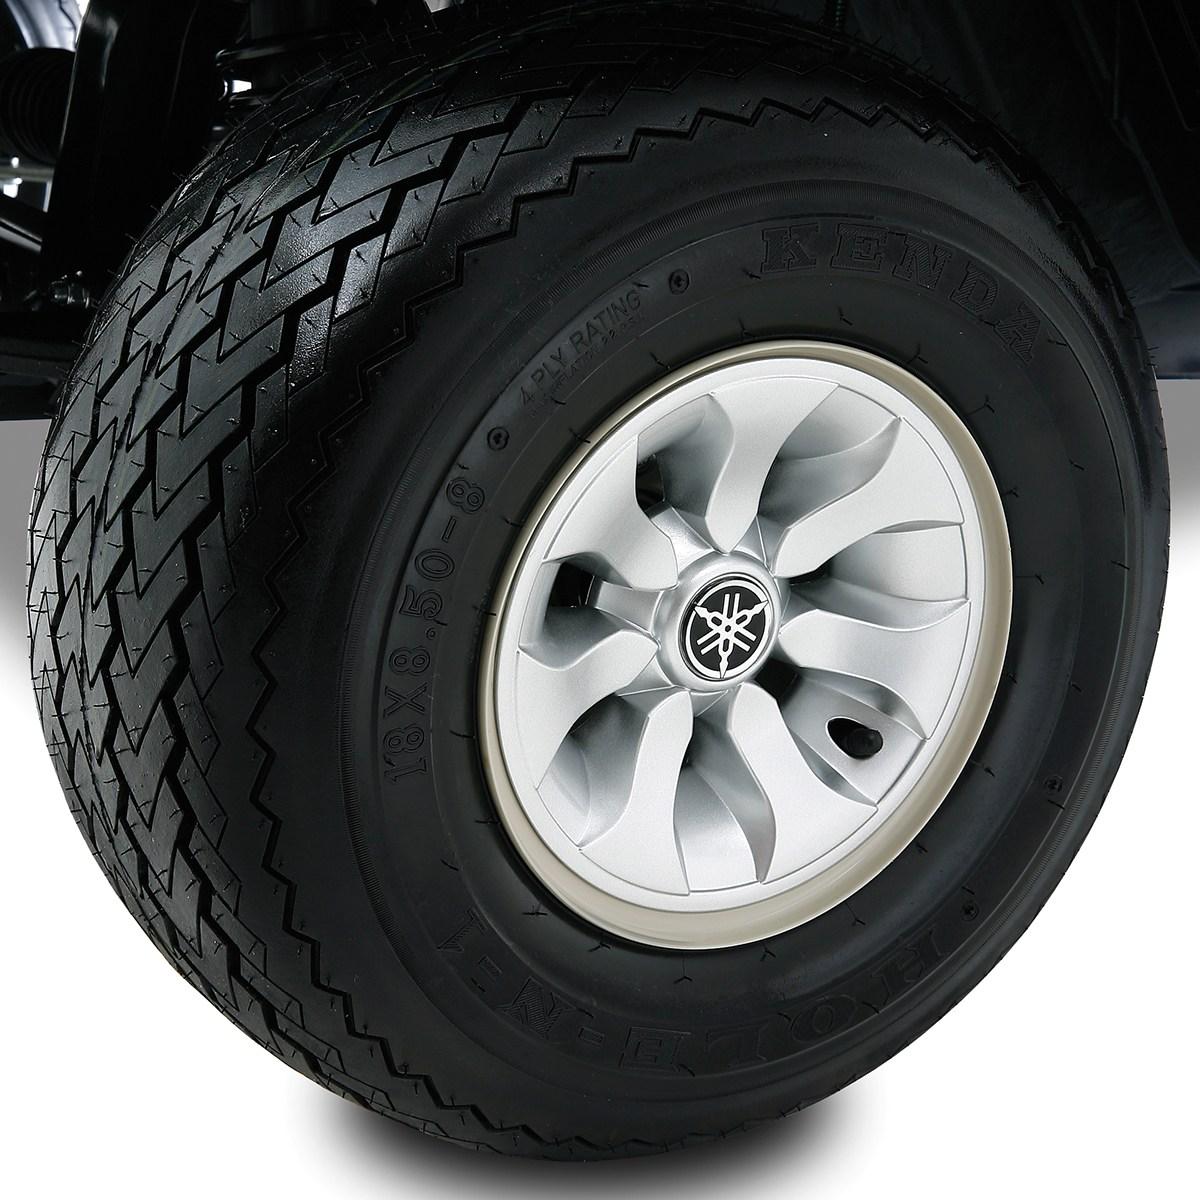 Fräscha upp stilen i din golfbil, samtidigt som du skyddar hjulen. Våra exklusiva hjulkåpor har Yamahas ikoniska utseende och passar till alla 8-tums standardhjul.